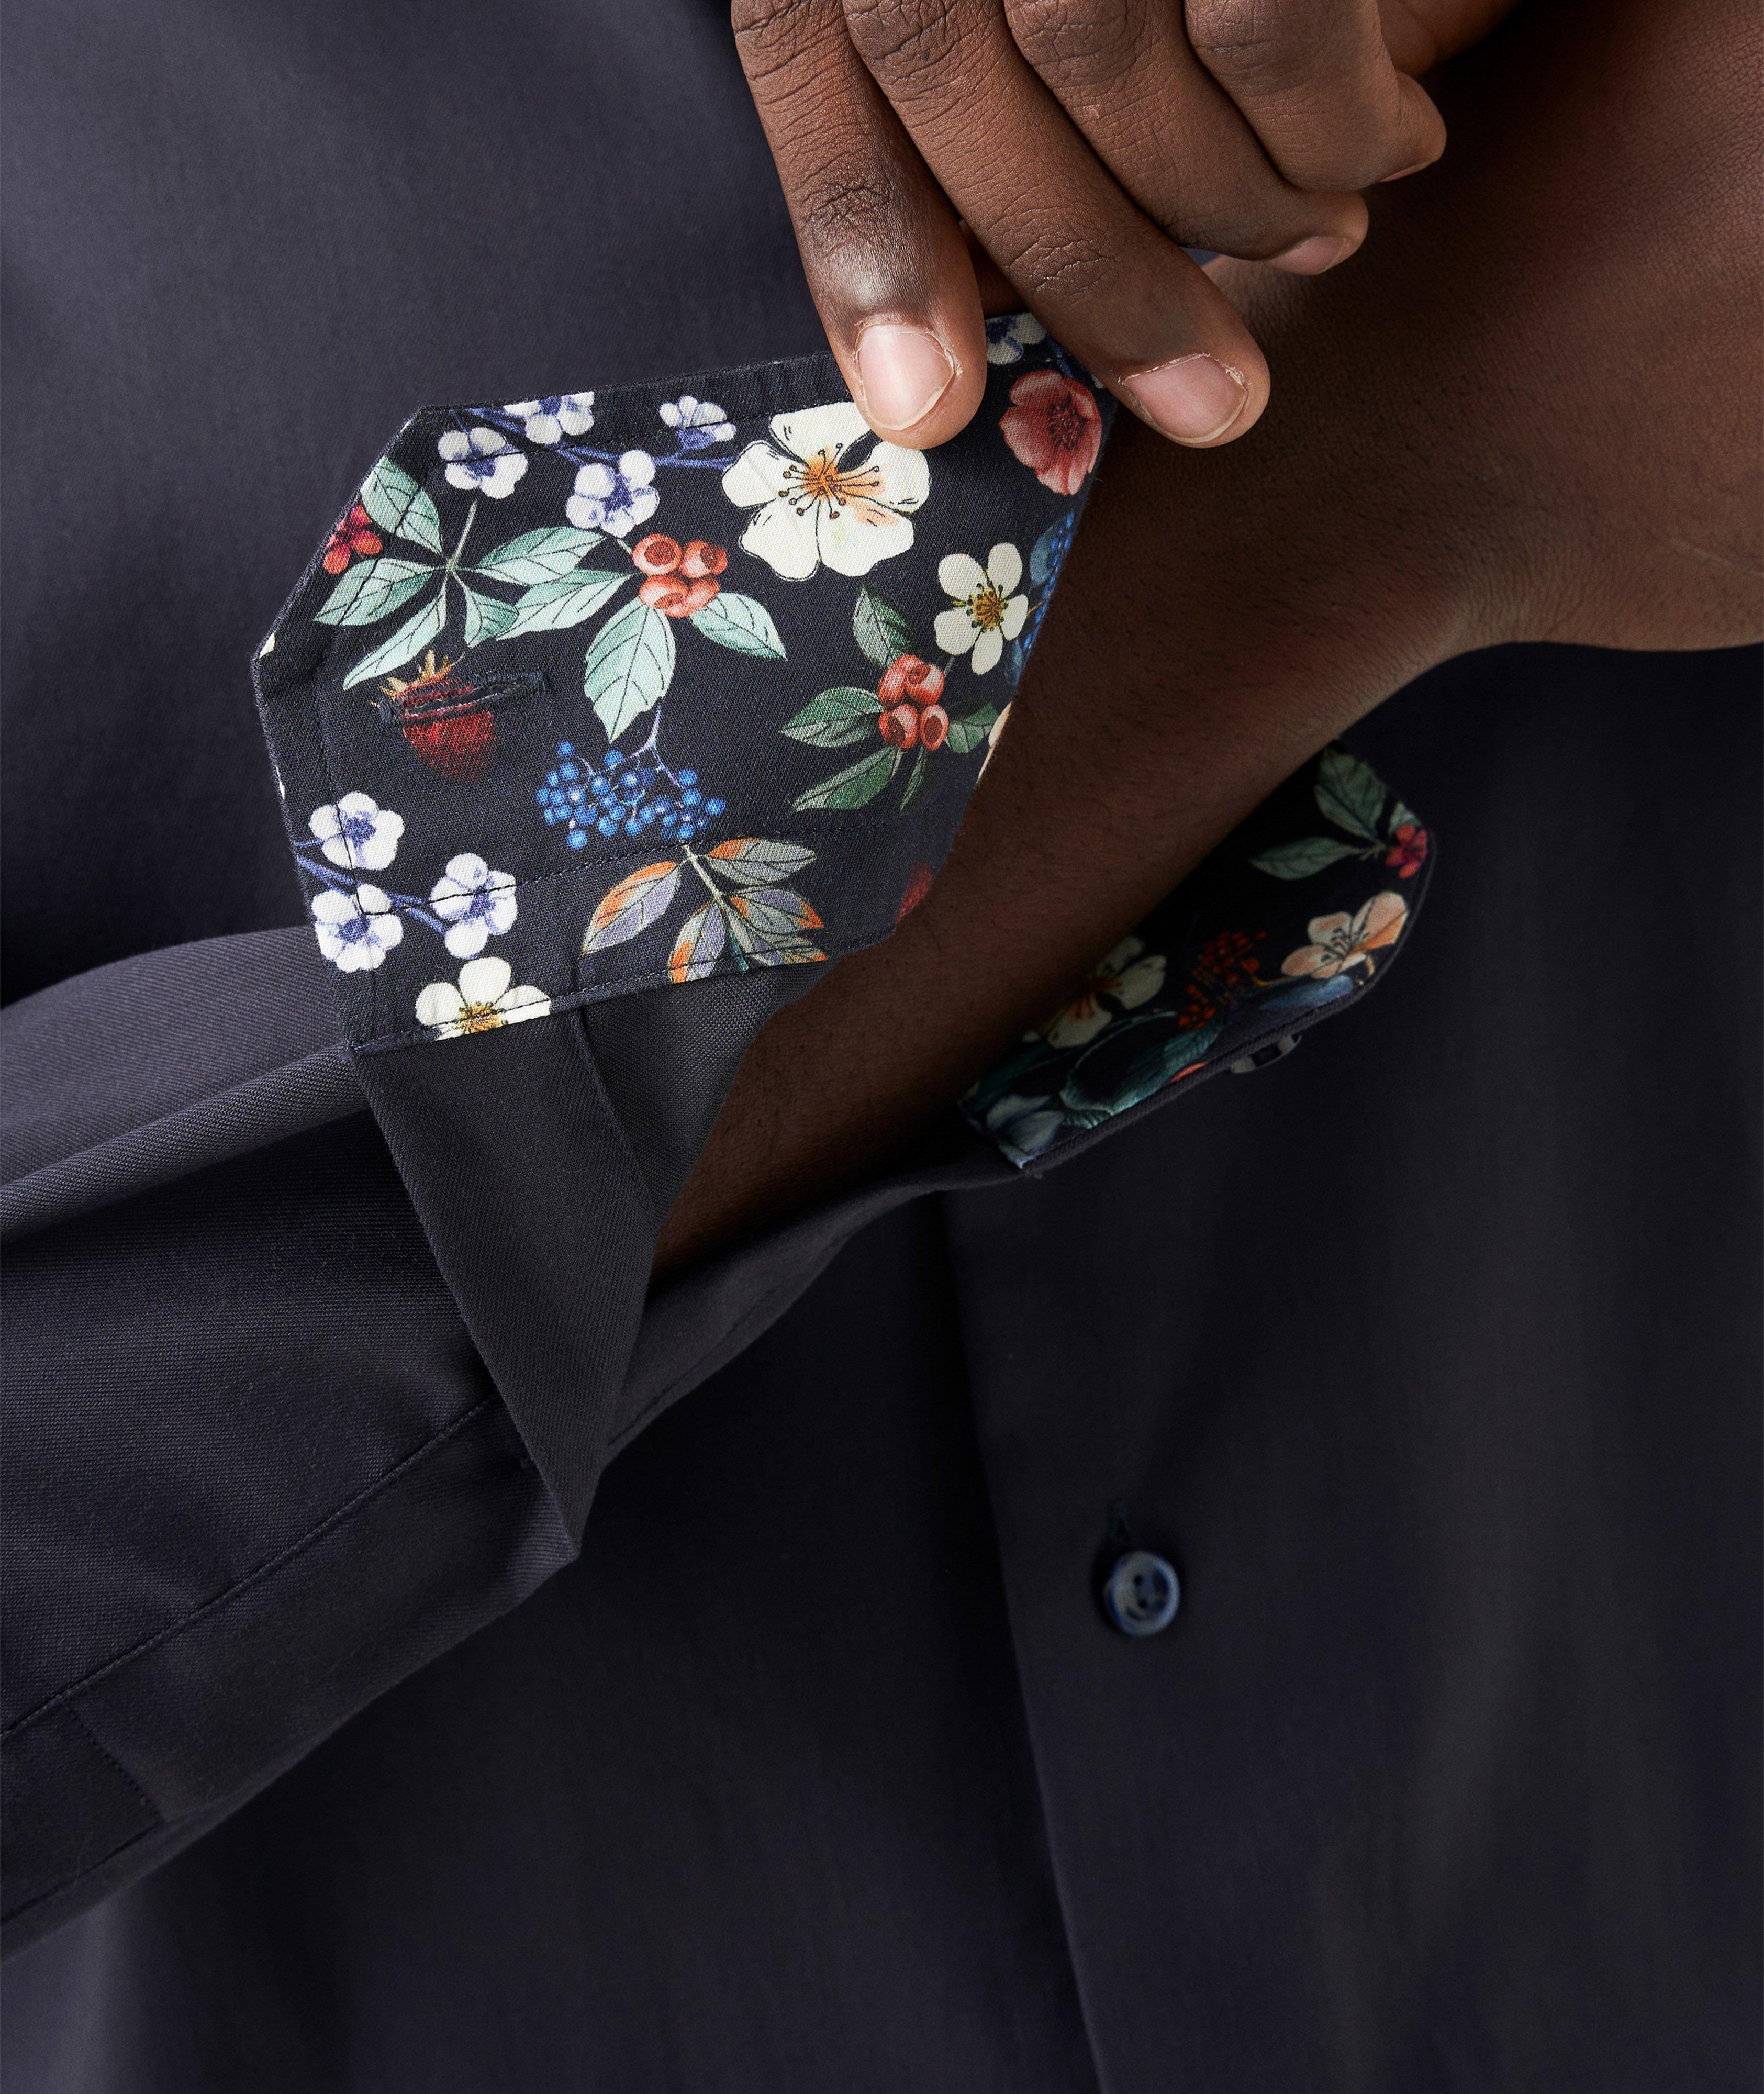 Chemise habillée en twill à motif floral image 3